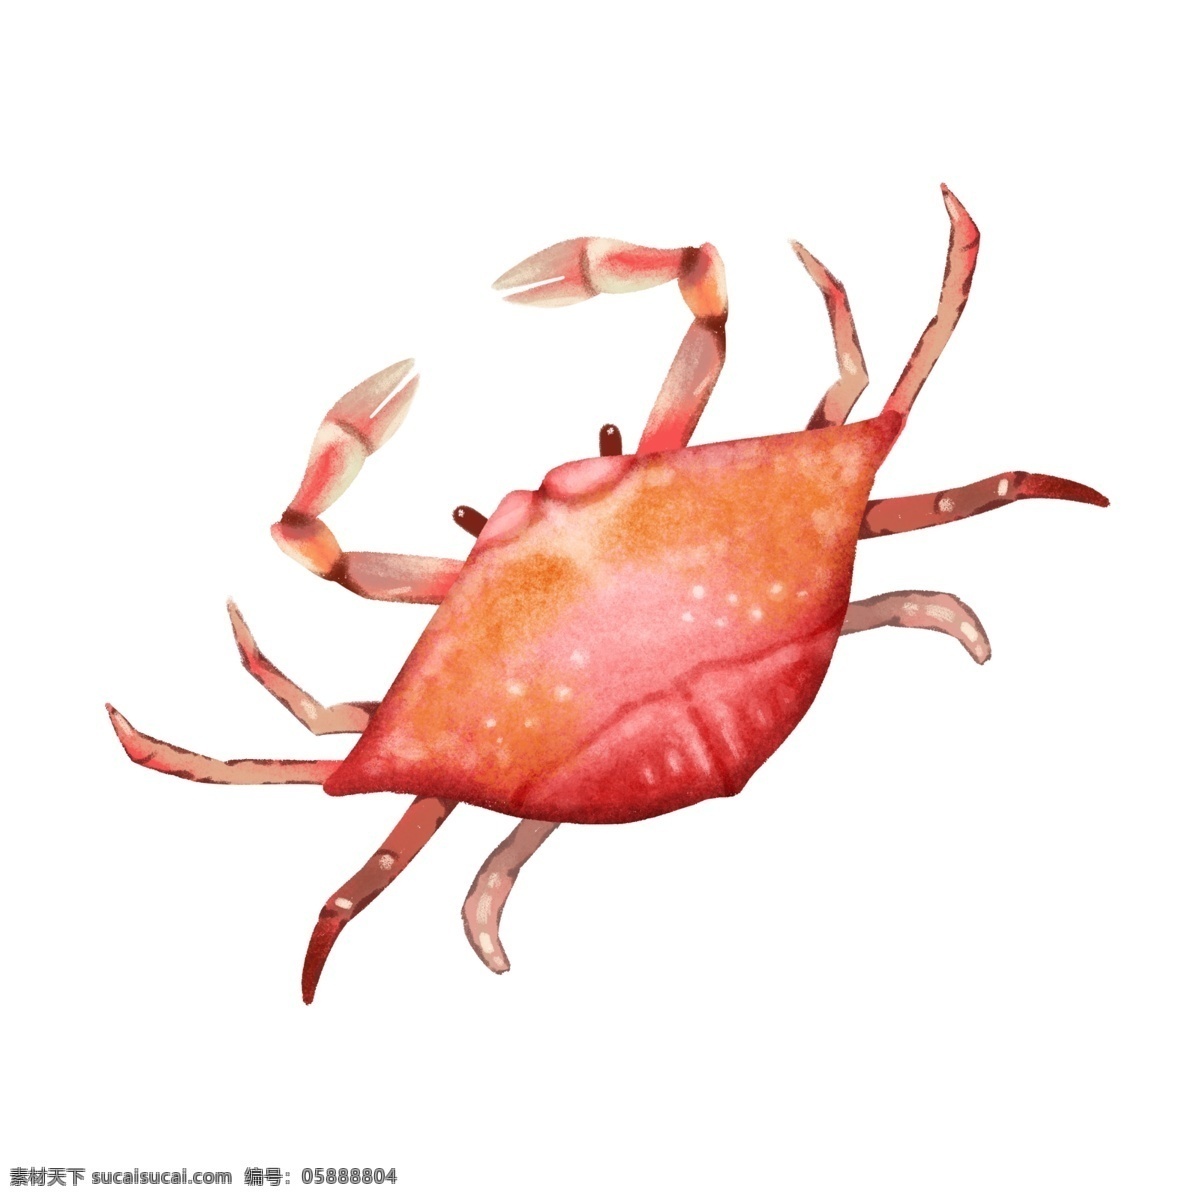 手绘 美味 海鲜 螃蟹 鲜美的螃蟹 肉质 细嫩 漂亮的螃蟹 好看的螃蟹 营养 丰富 丰美 无比